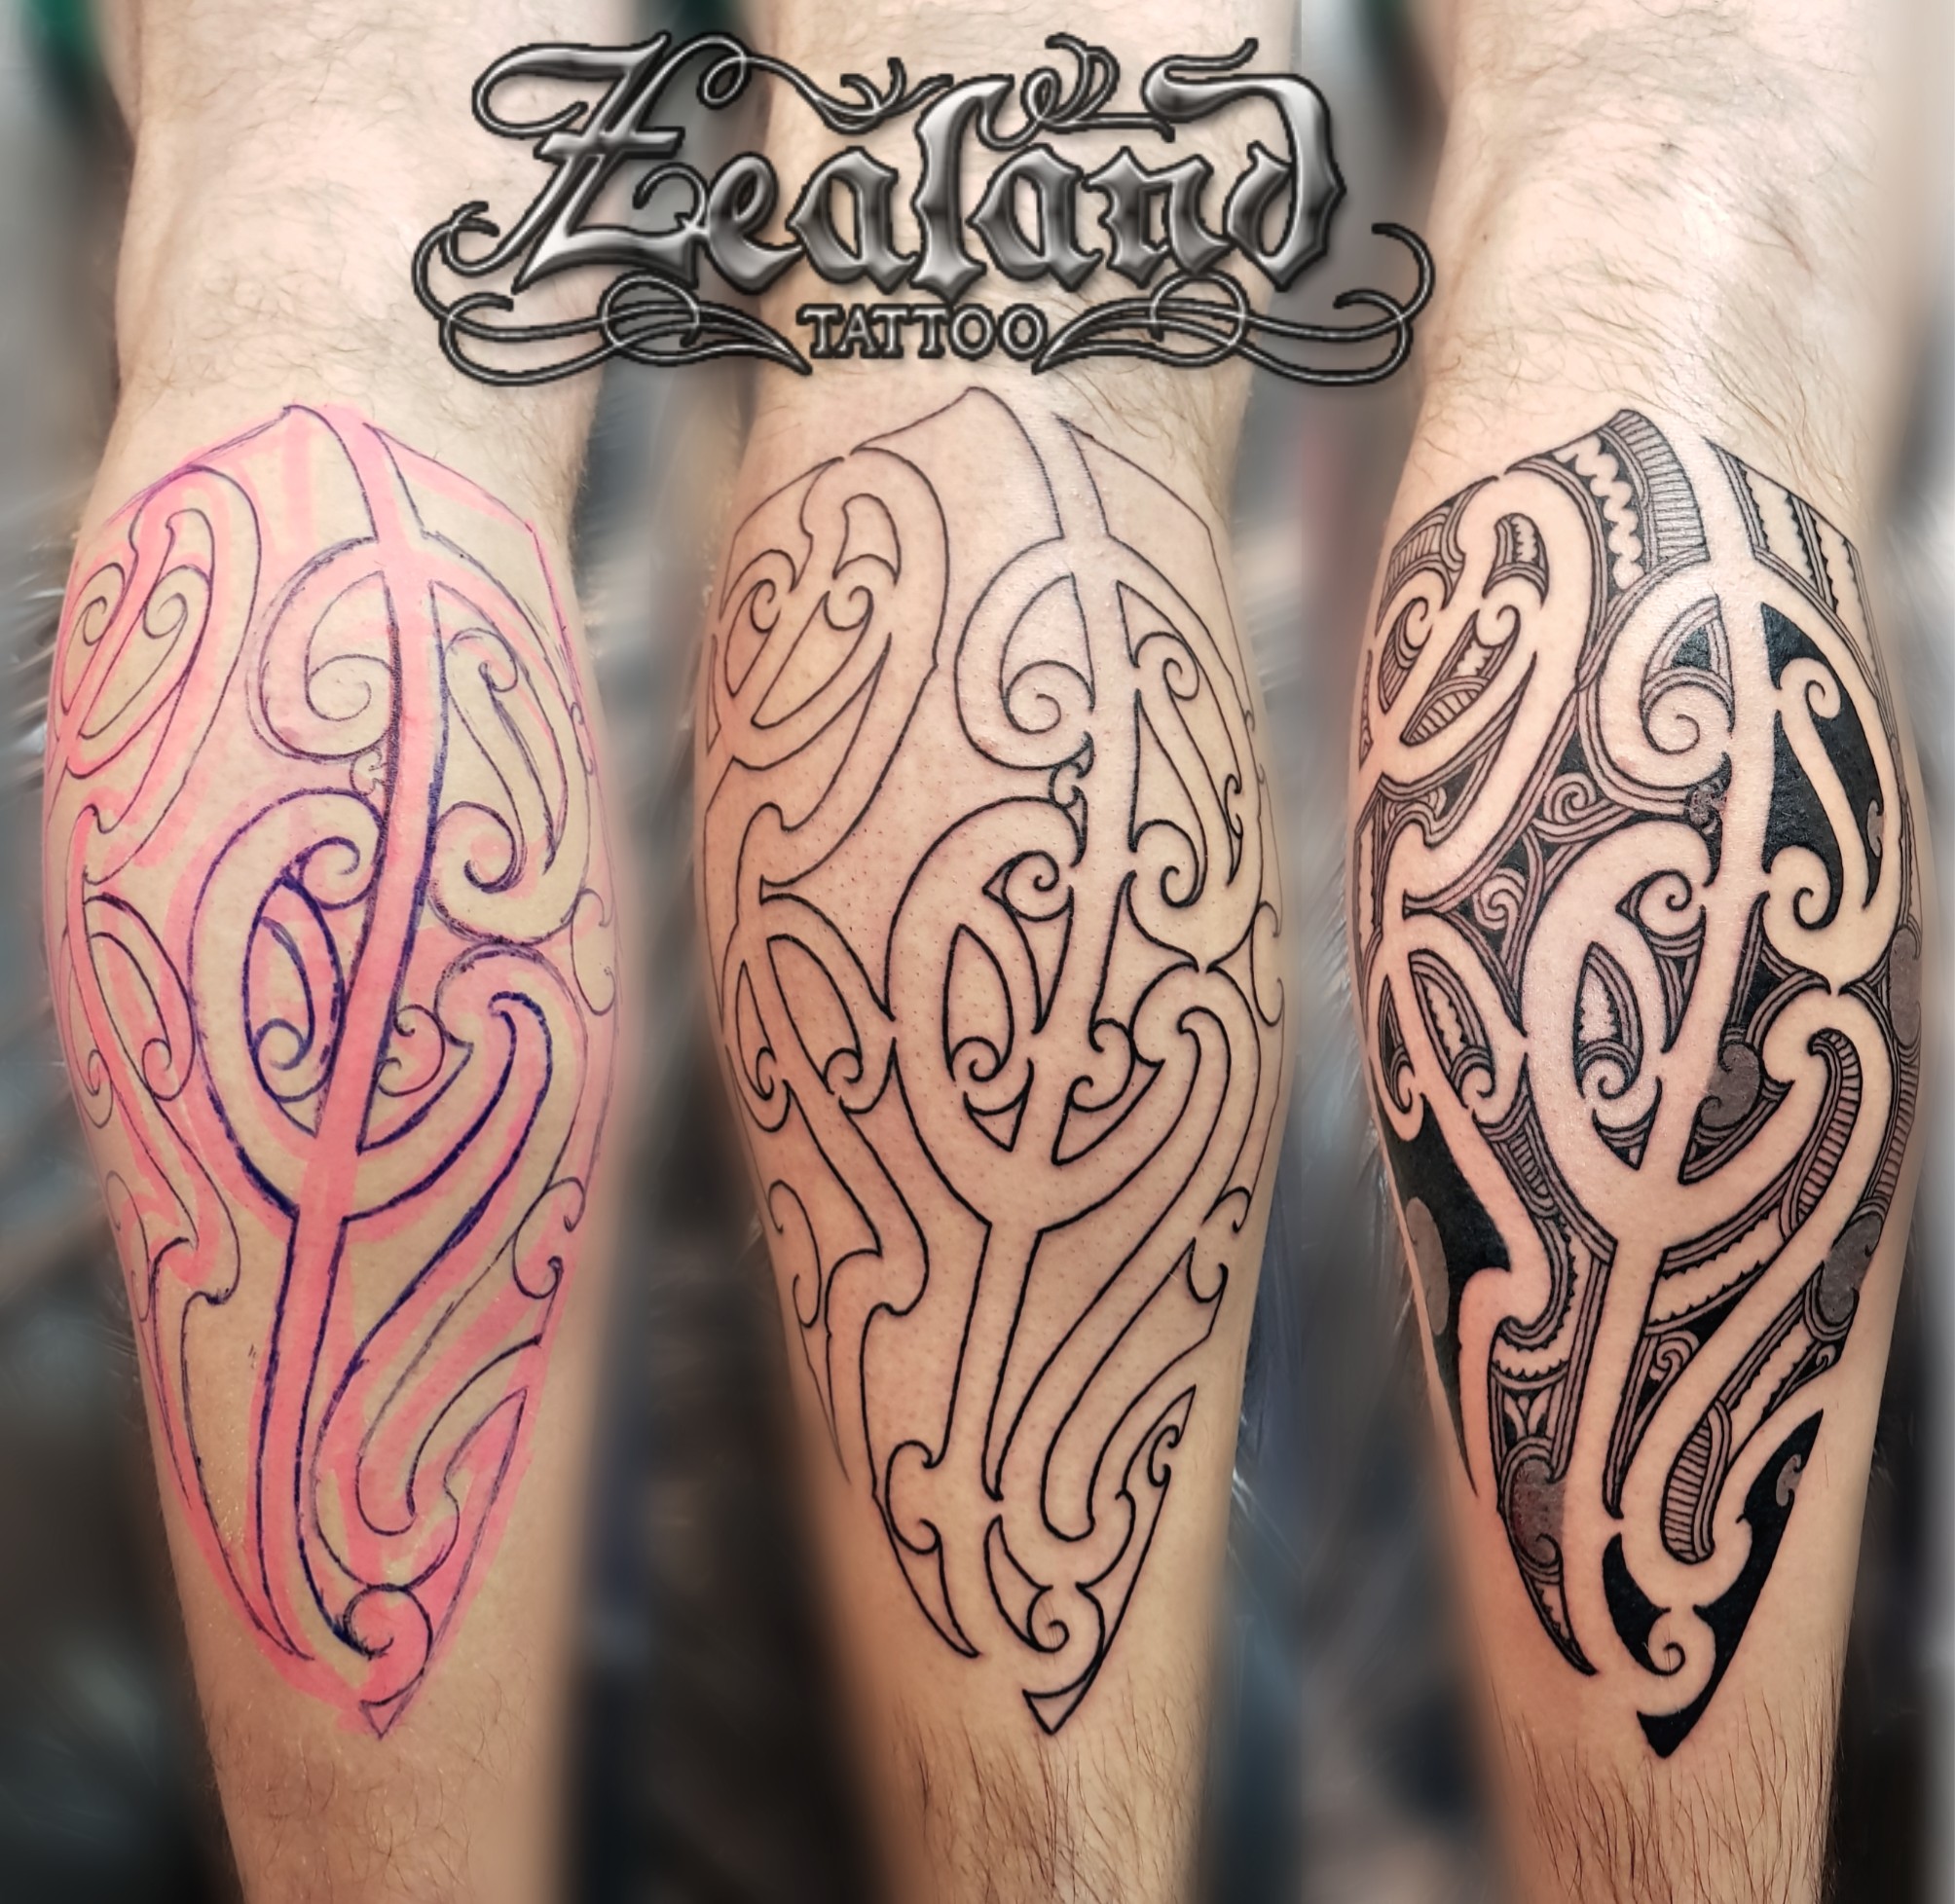 Tattoo uploaded by Angel Tattoo Goa - Best Tattoo Artist in Goa • Maori  Tattoo By Sagar Dharoliya At Angel Tattoo Goa - Best Tattoo Artist in Goa -  Best Tattoo Studio